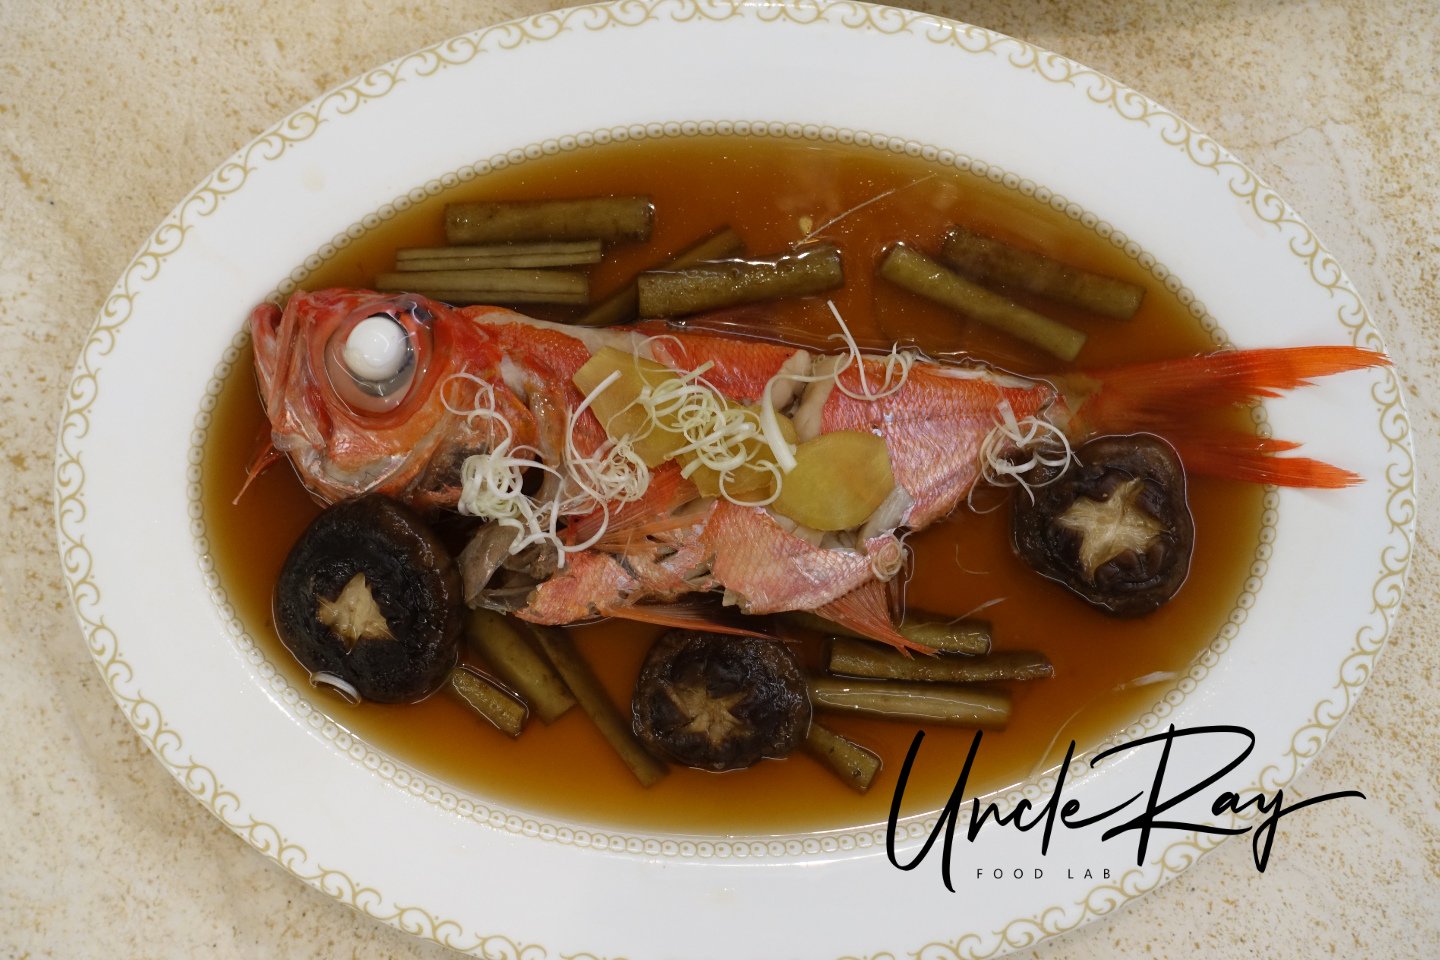 日本醬煮魚食譜 做法 Uncleray Foodlab的cook1cook食譜分享